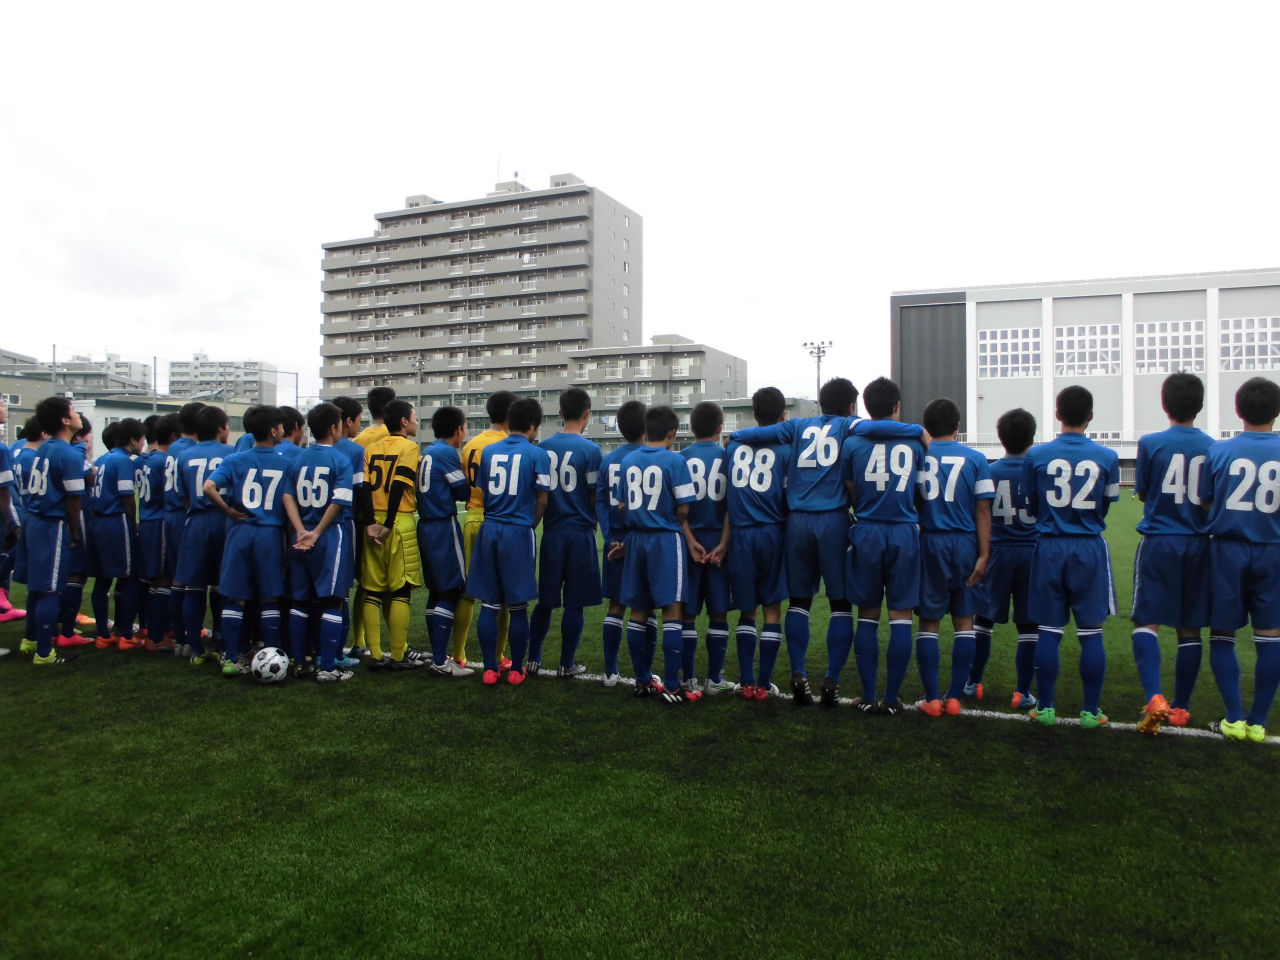 学校法人希望学園 札幌第一高等学校 新サッカー人工芝グラウンド竣工記念 グラウンド開き 15 10 12